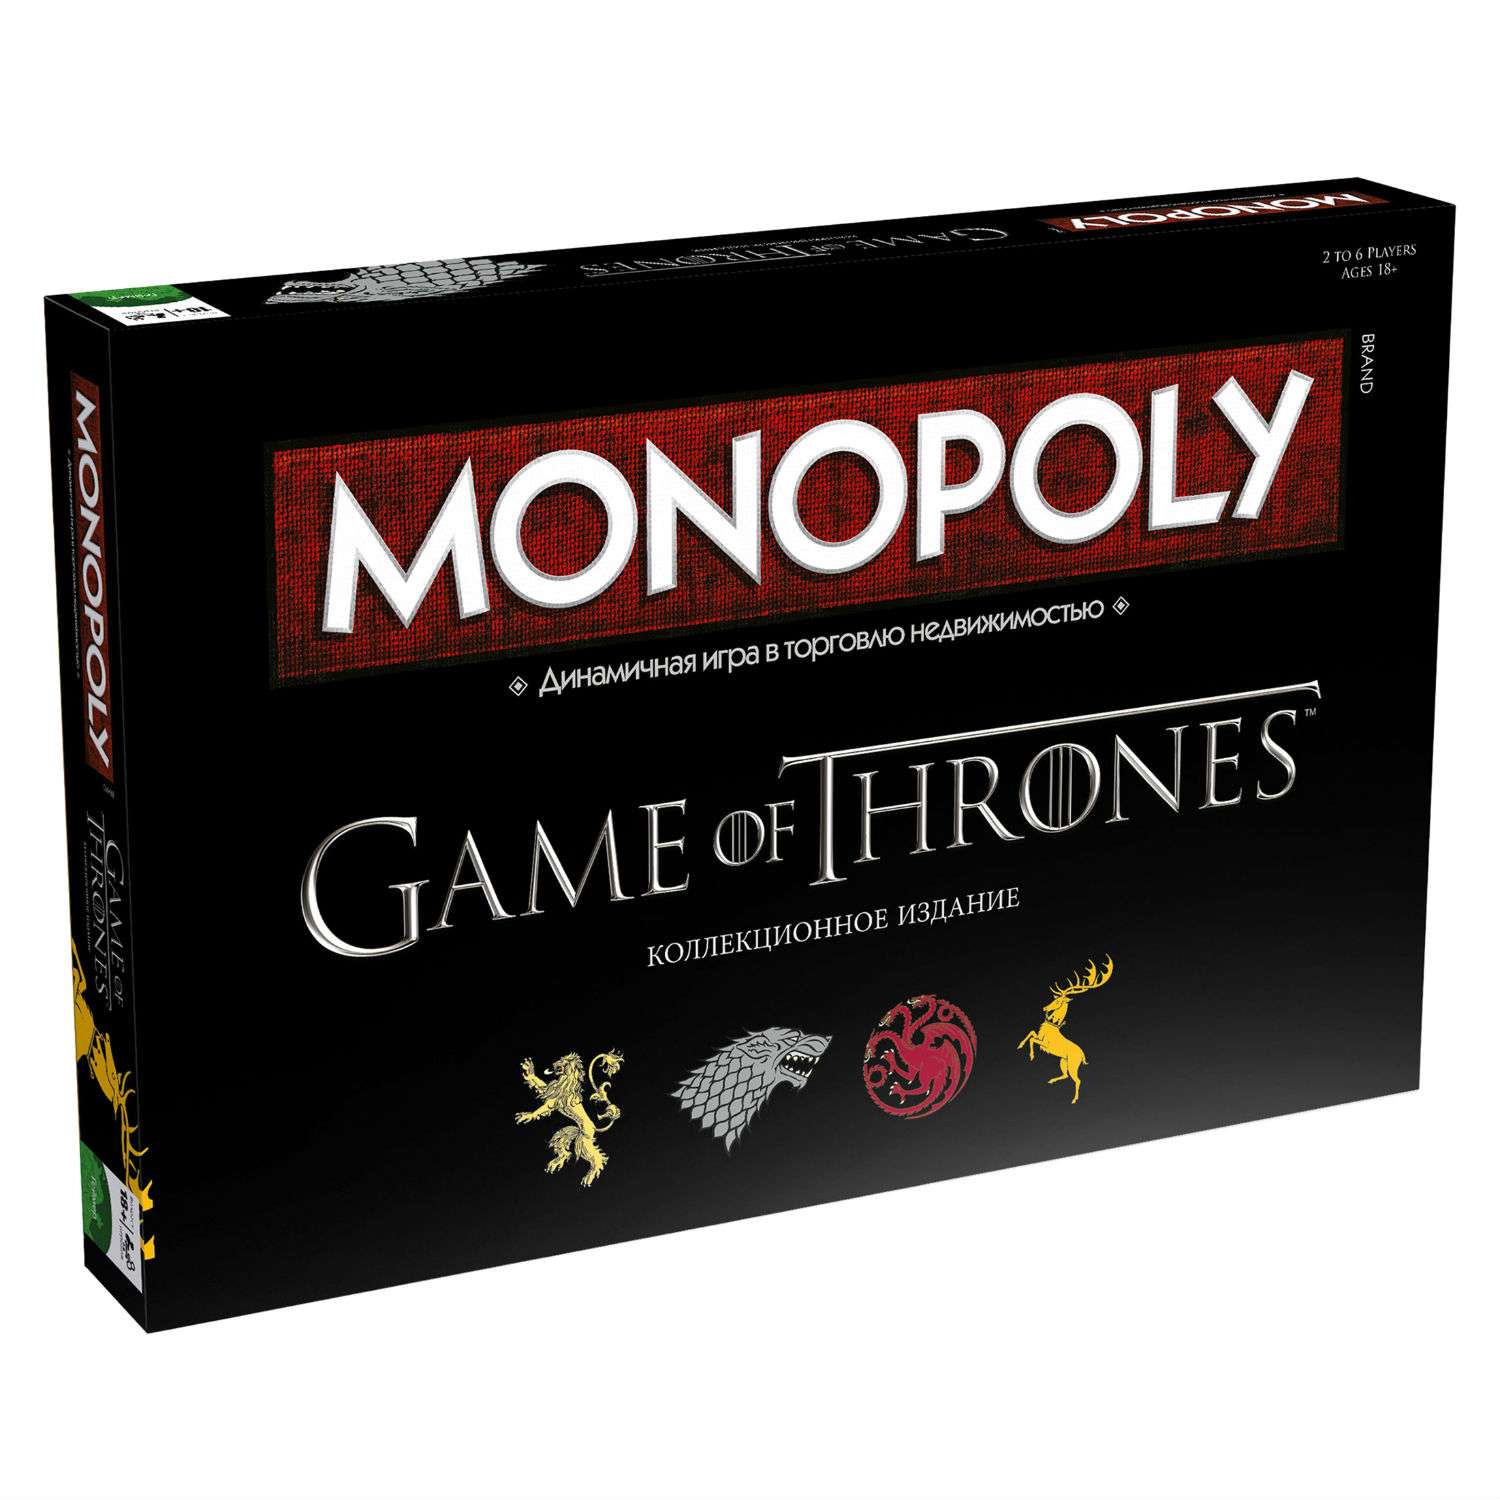 Настольная игра Monopoly монополия Игра престолов - фото 1